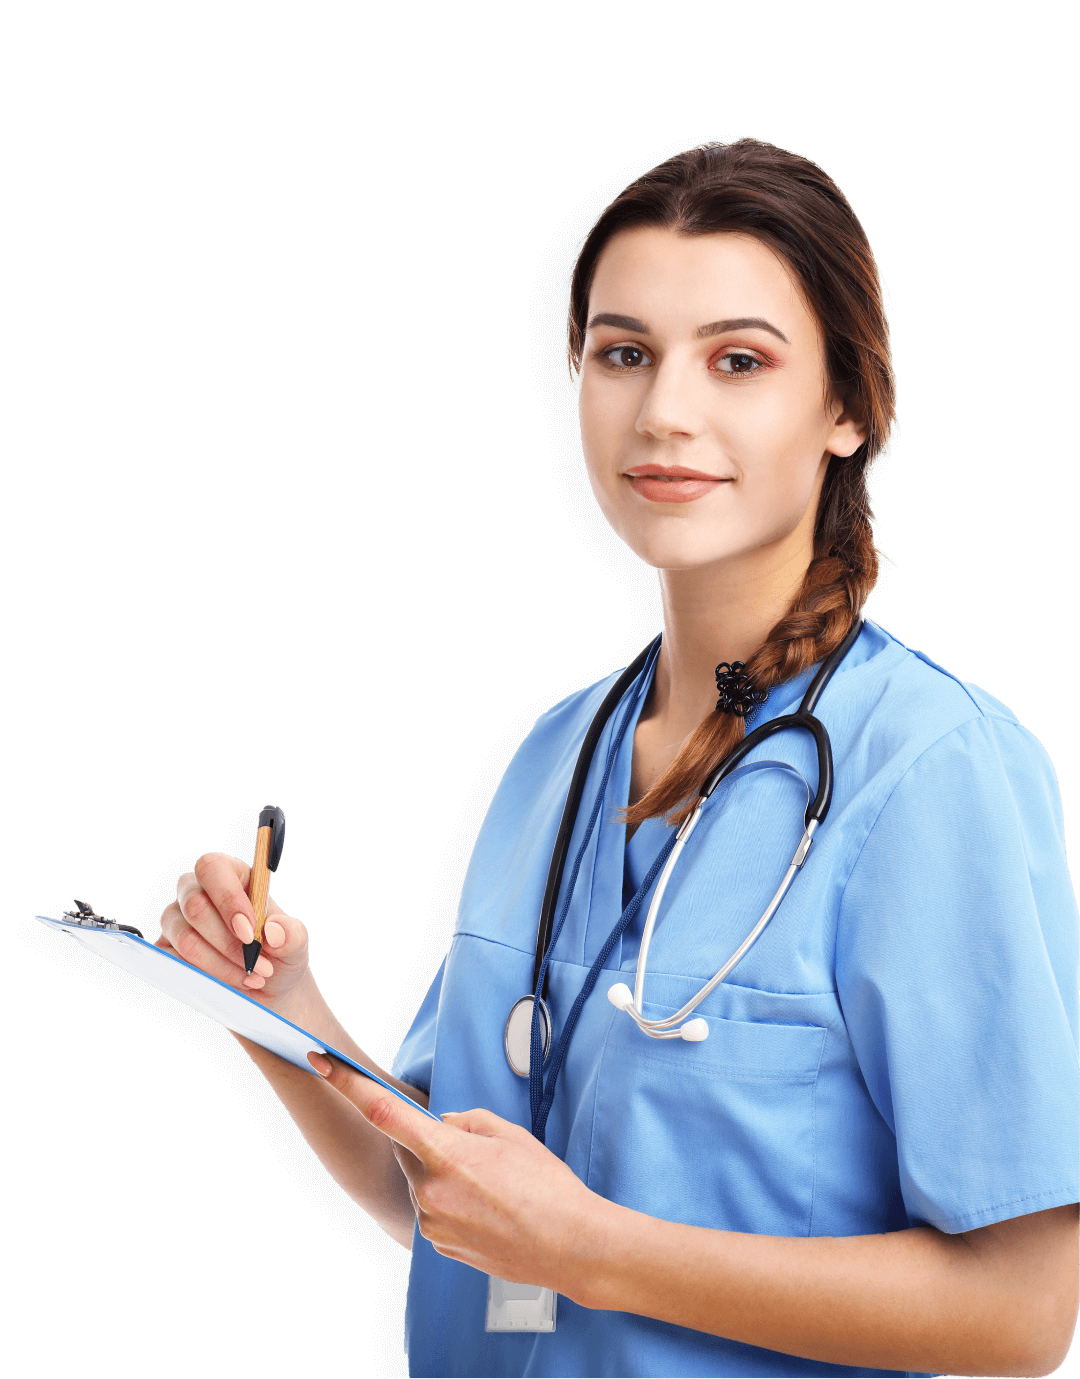 Nurse-Otolaryngology (CORLN) professional